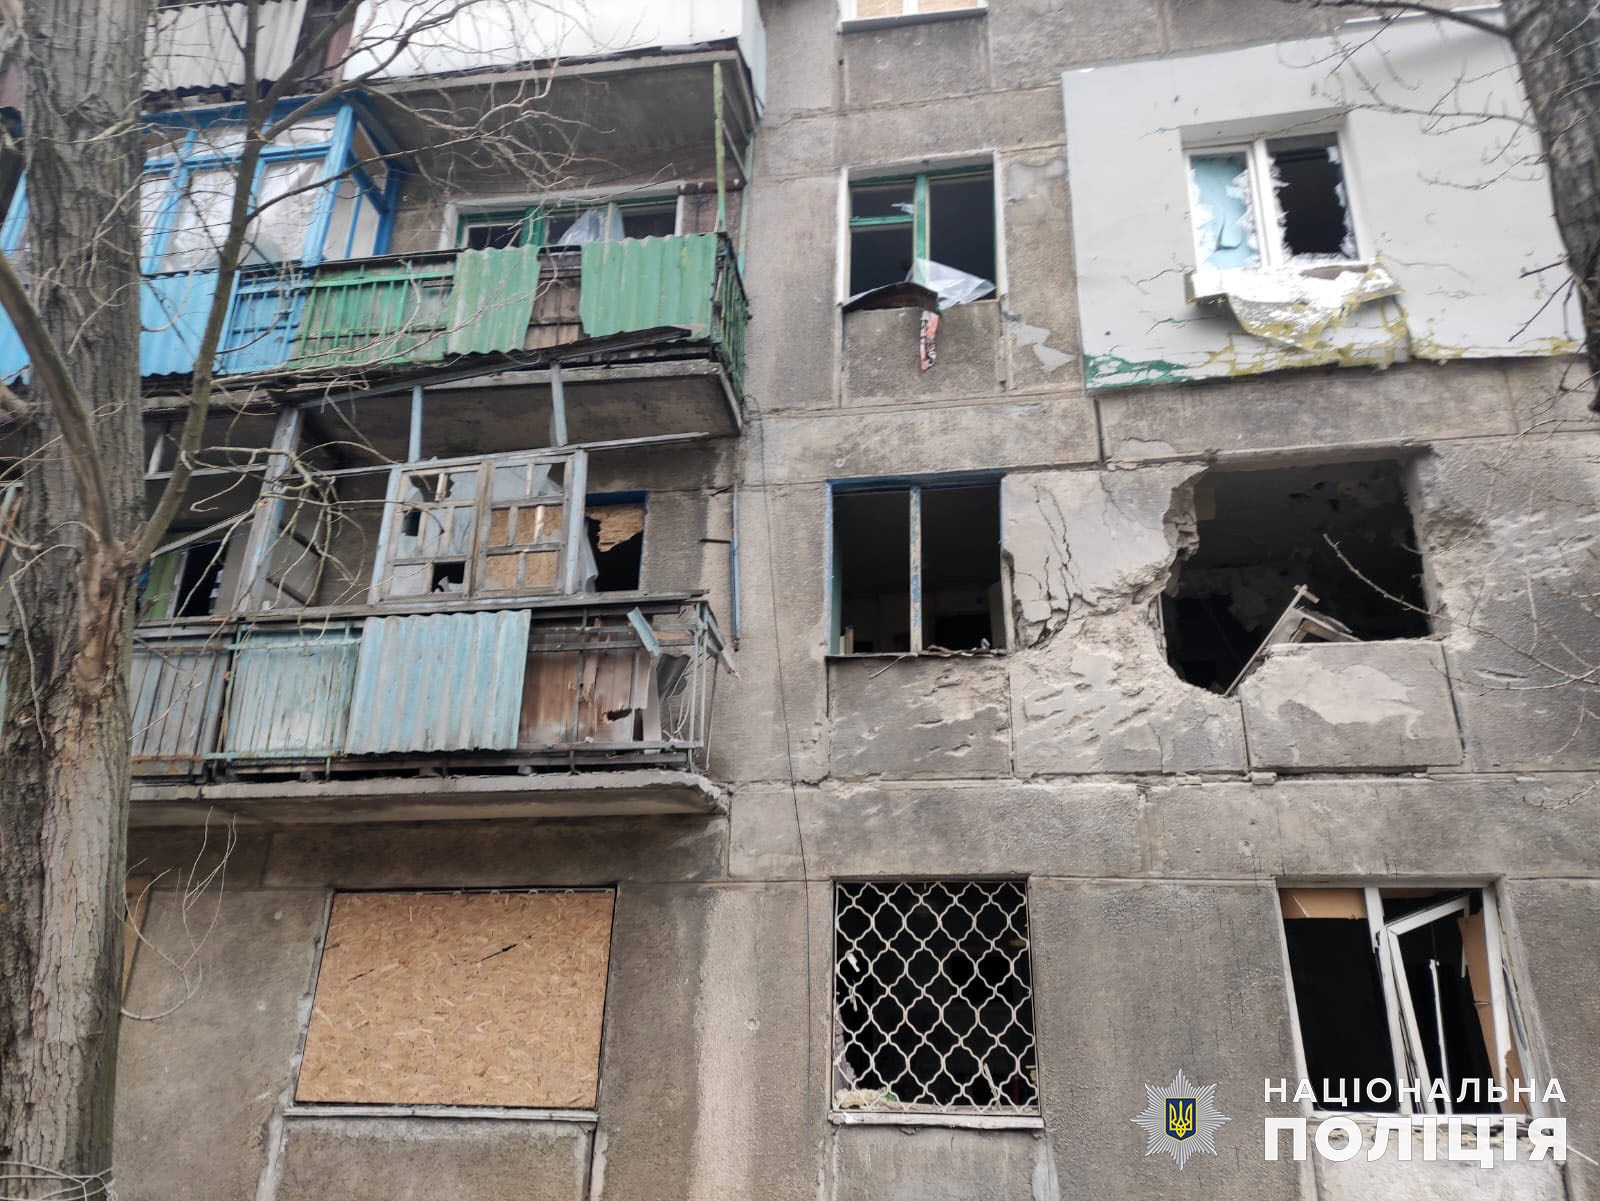 7 людей загинули, ще 4 поранені: минулої доби росіяни обстріляли Донецьку область 19 разів (зведення, фото) 2